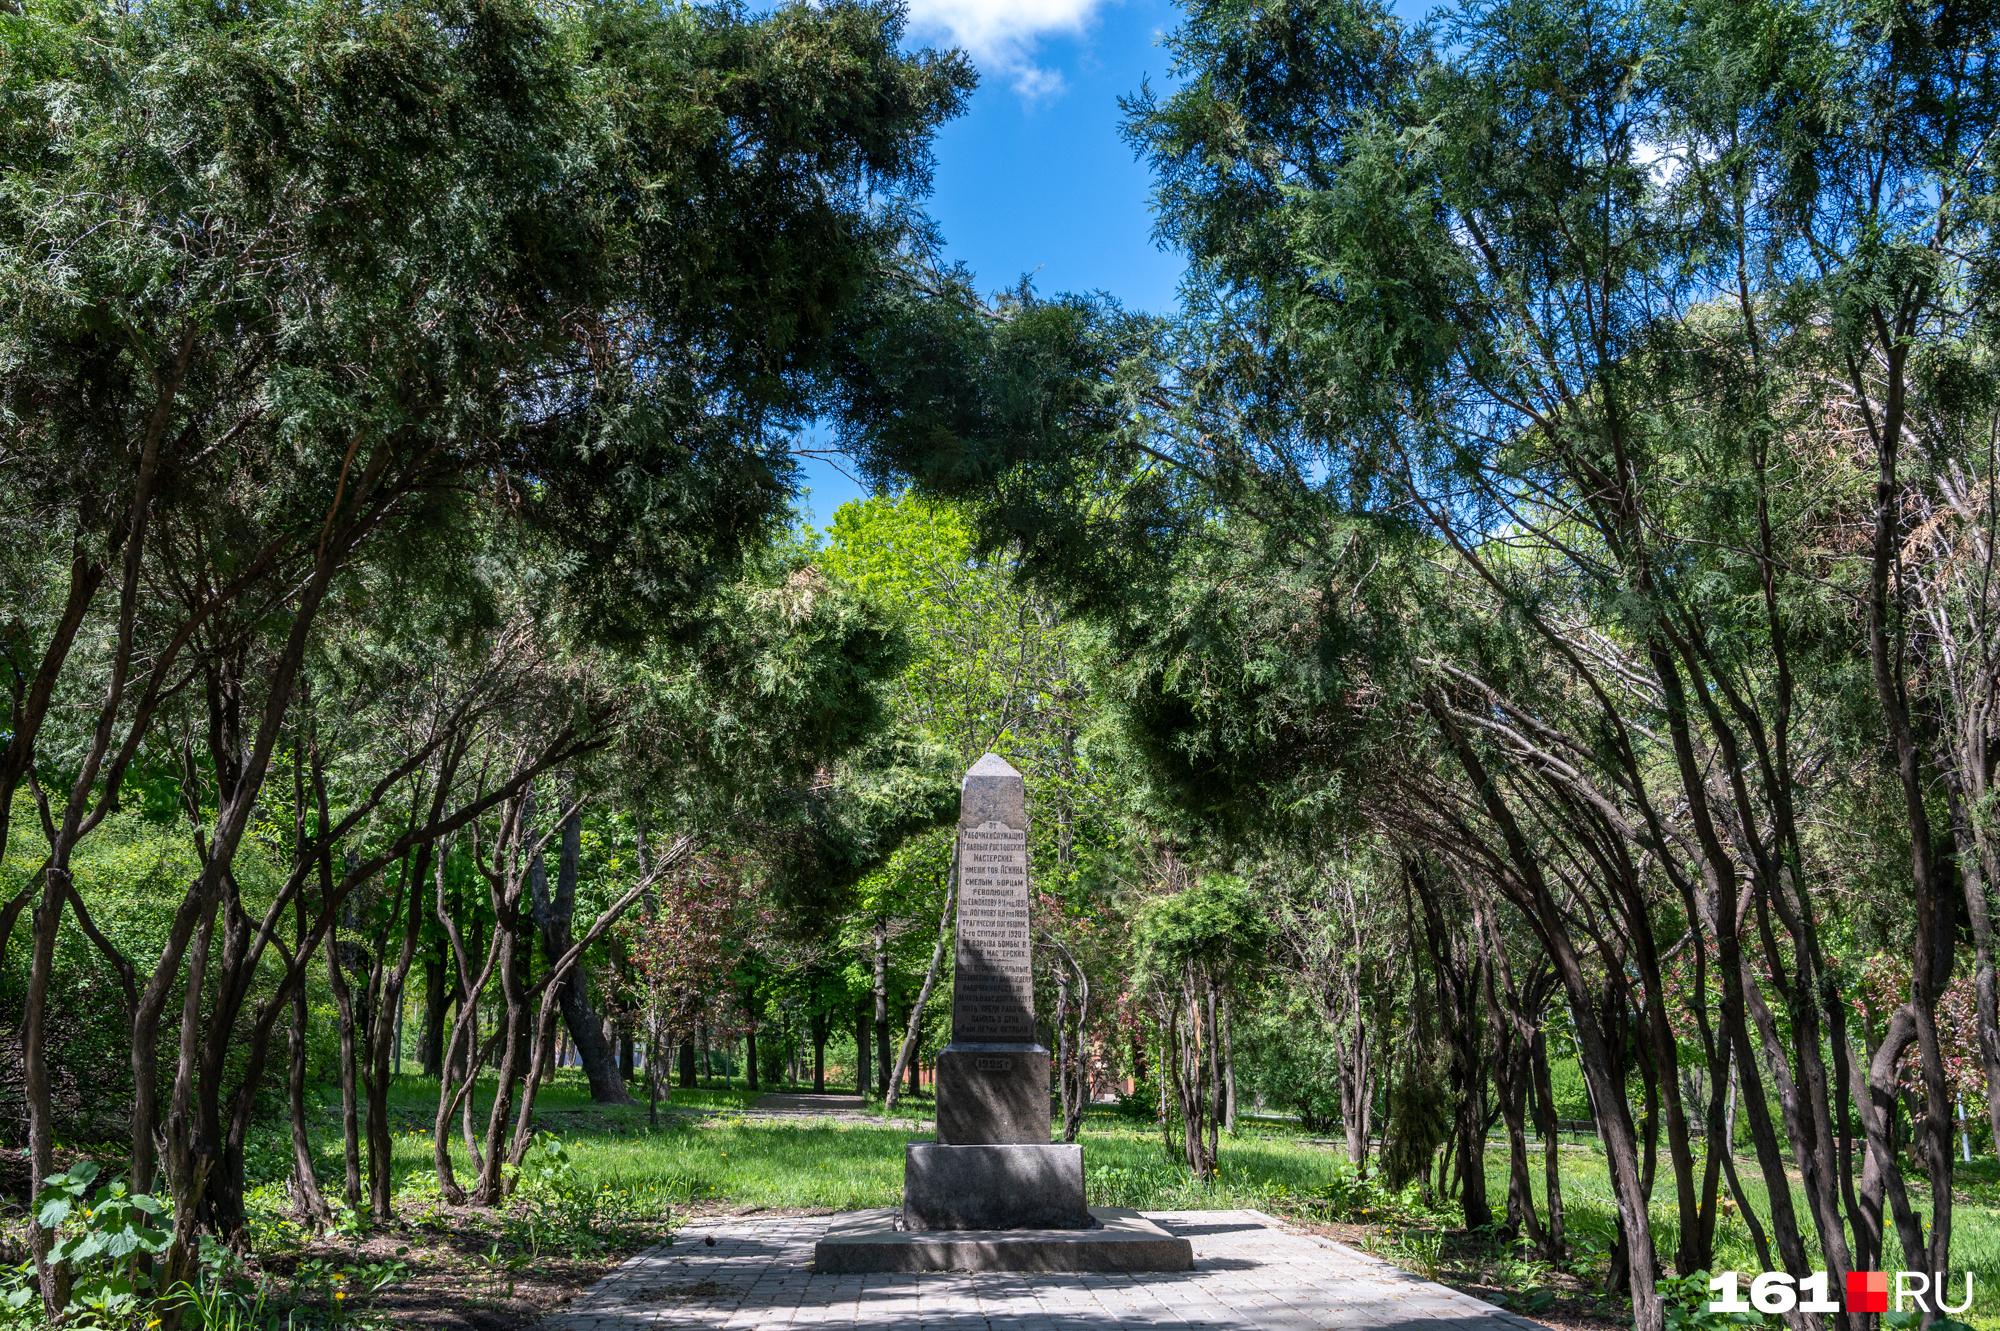 Мемориал в честь революционера Анатолия Собино, именем которого назван парк. Тут также есть его захоронение